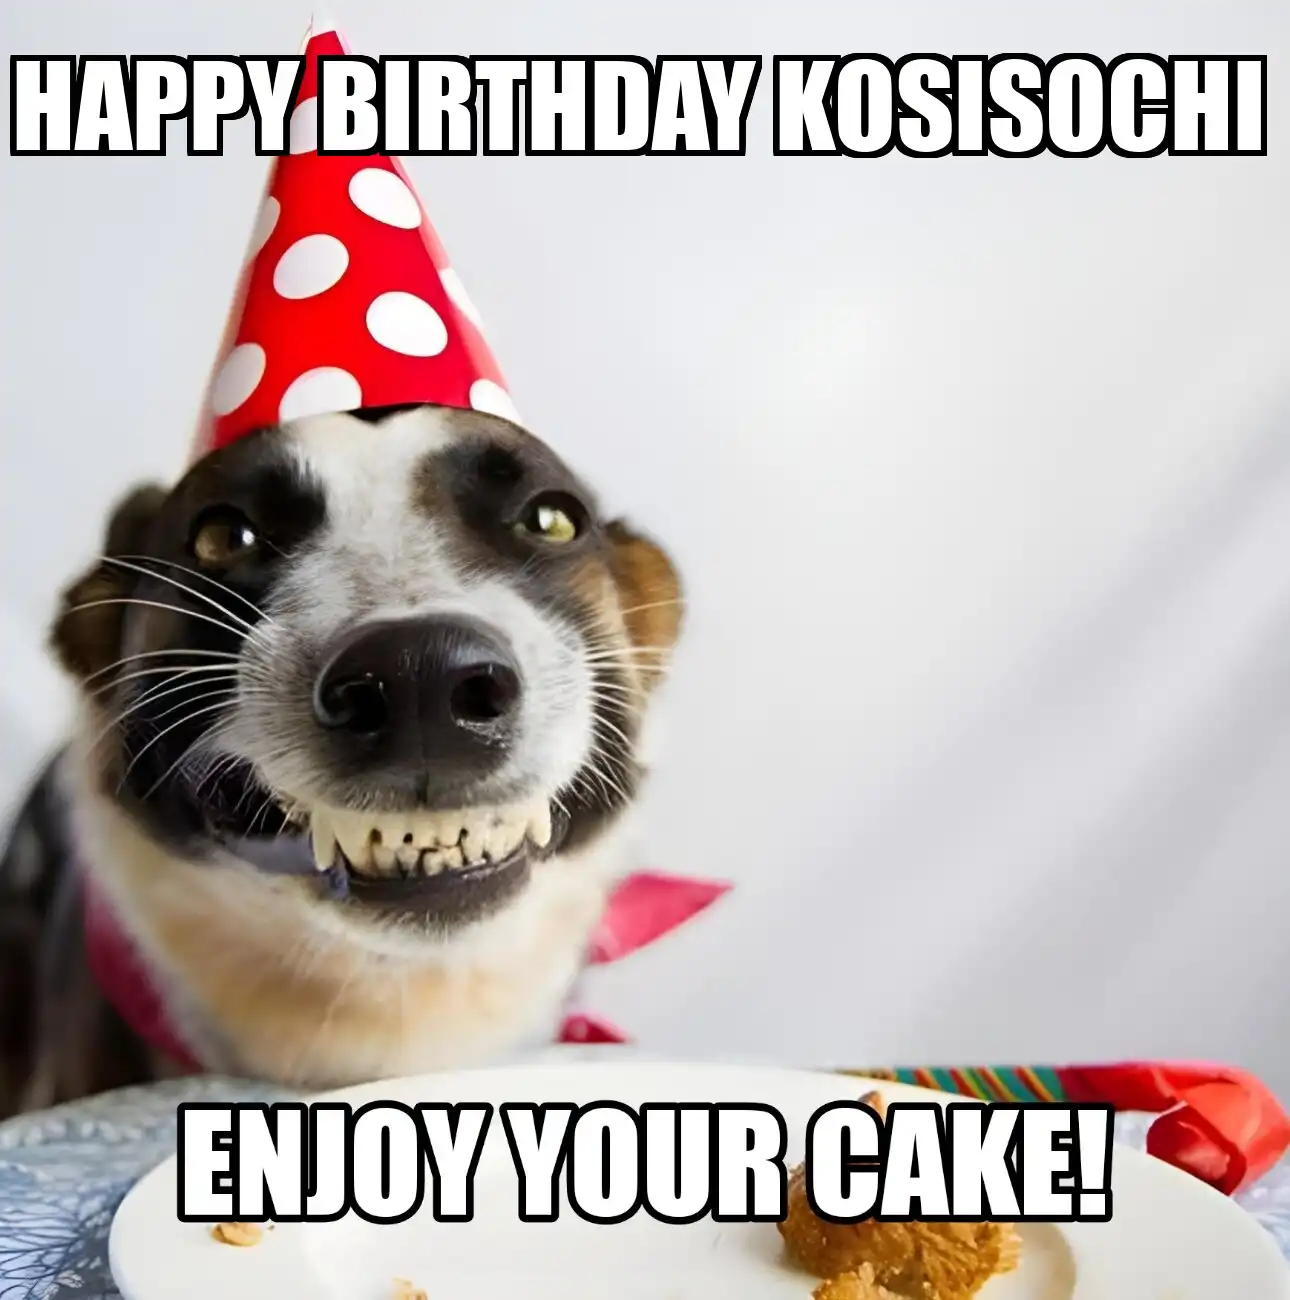 Happy Birthday Kosisochi Enjoy Your Cake Dog Meme